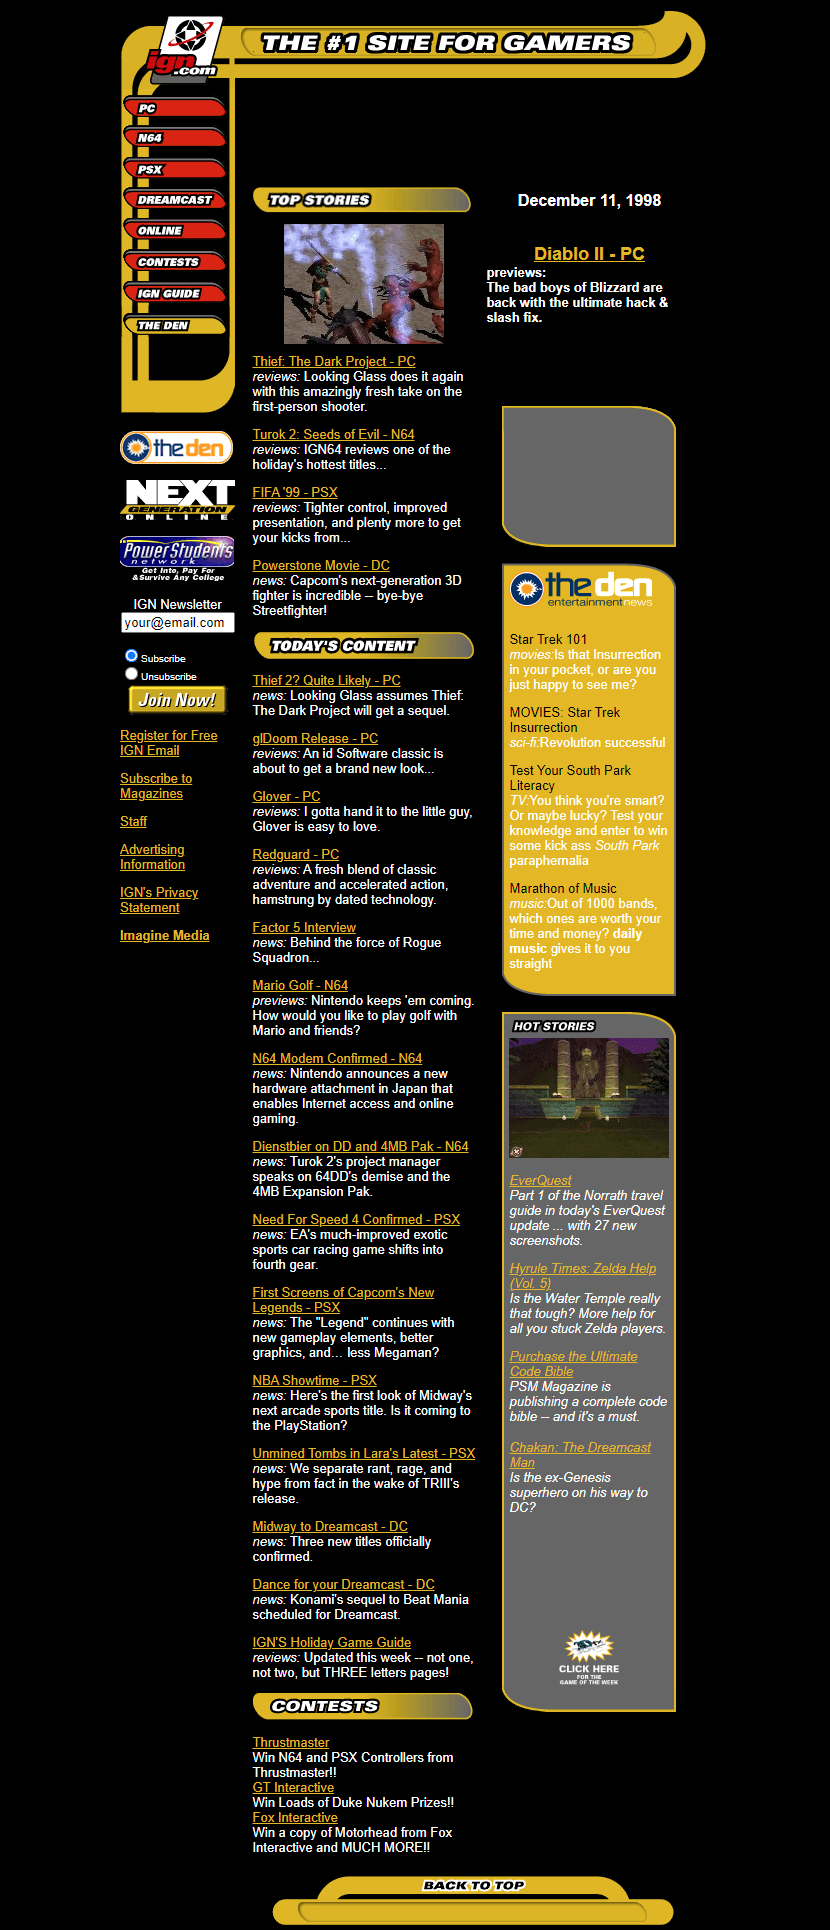 IGN website in 1998